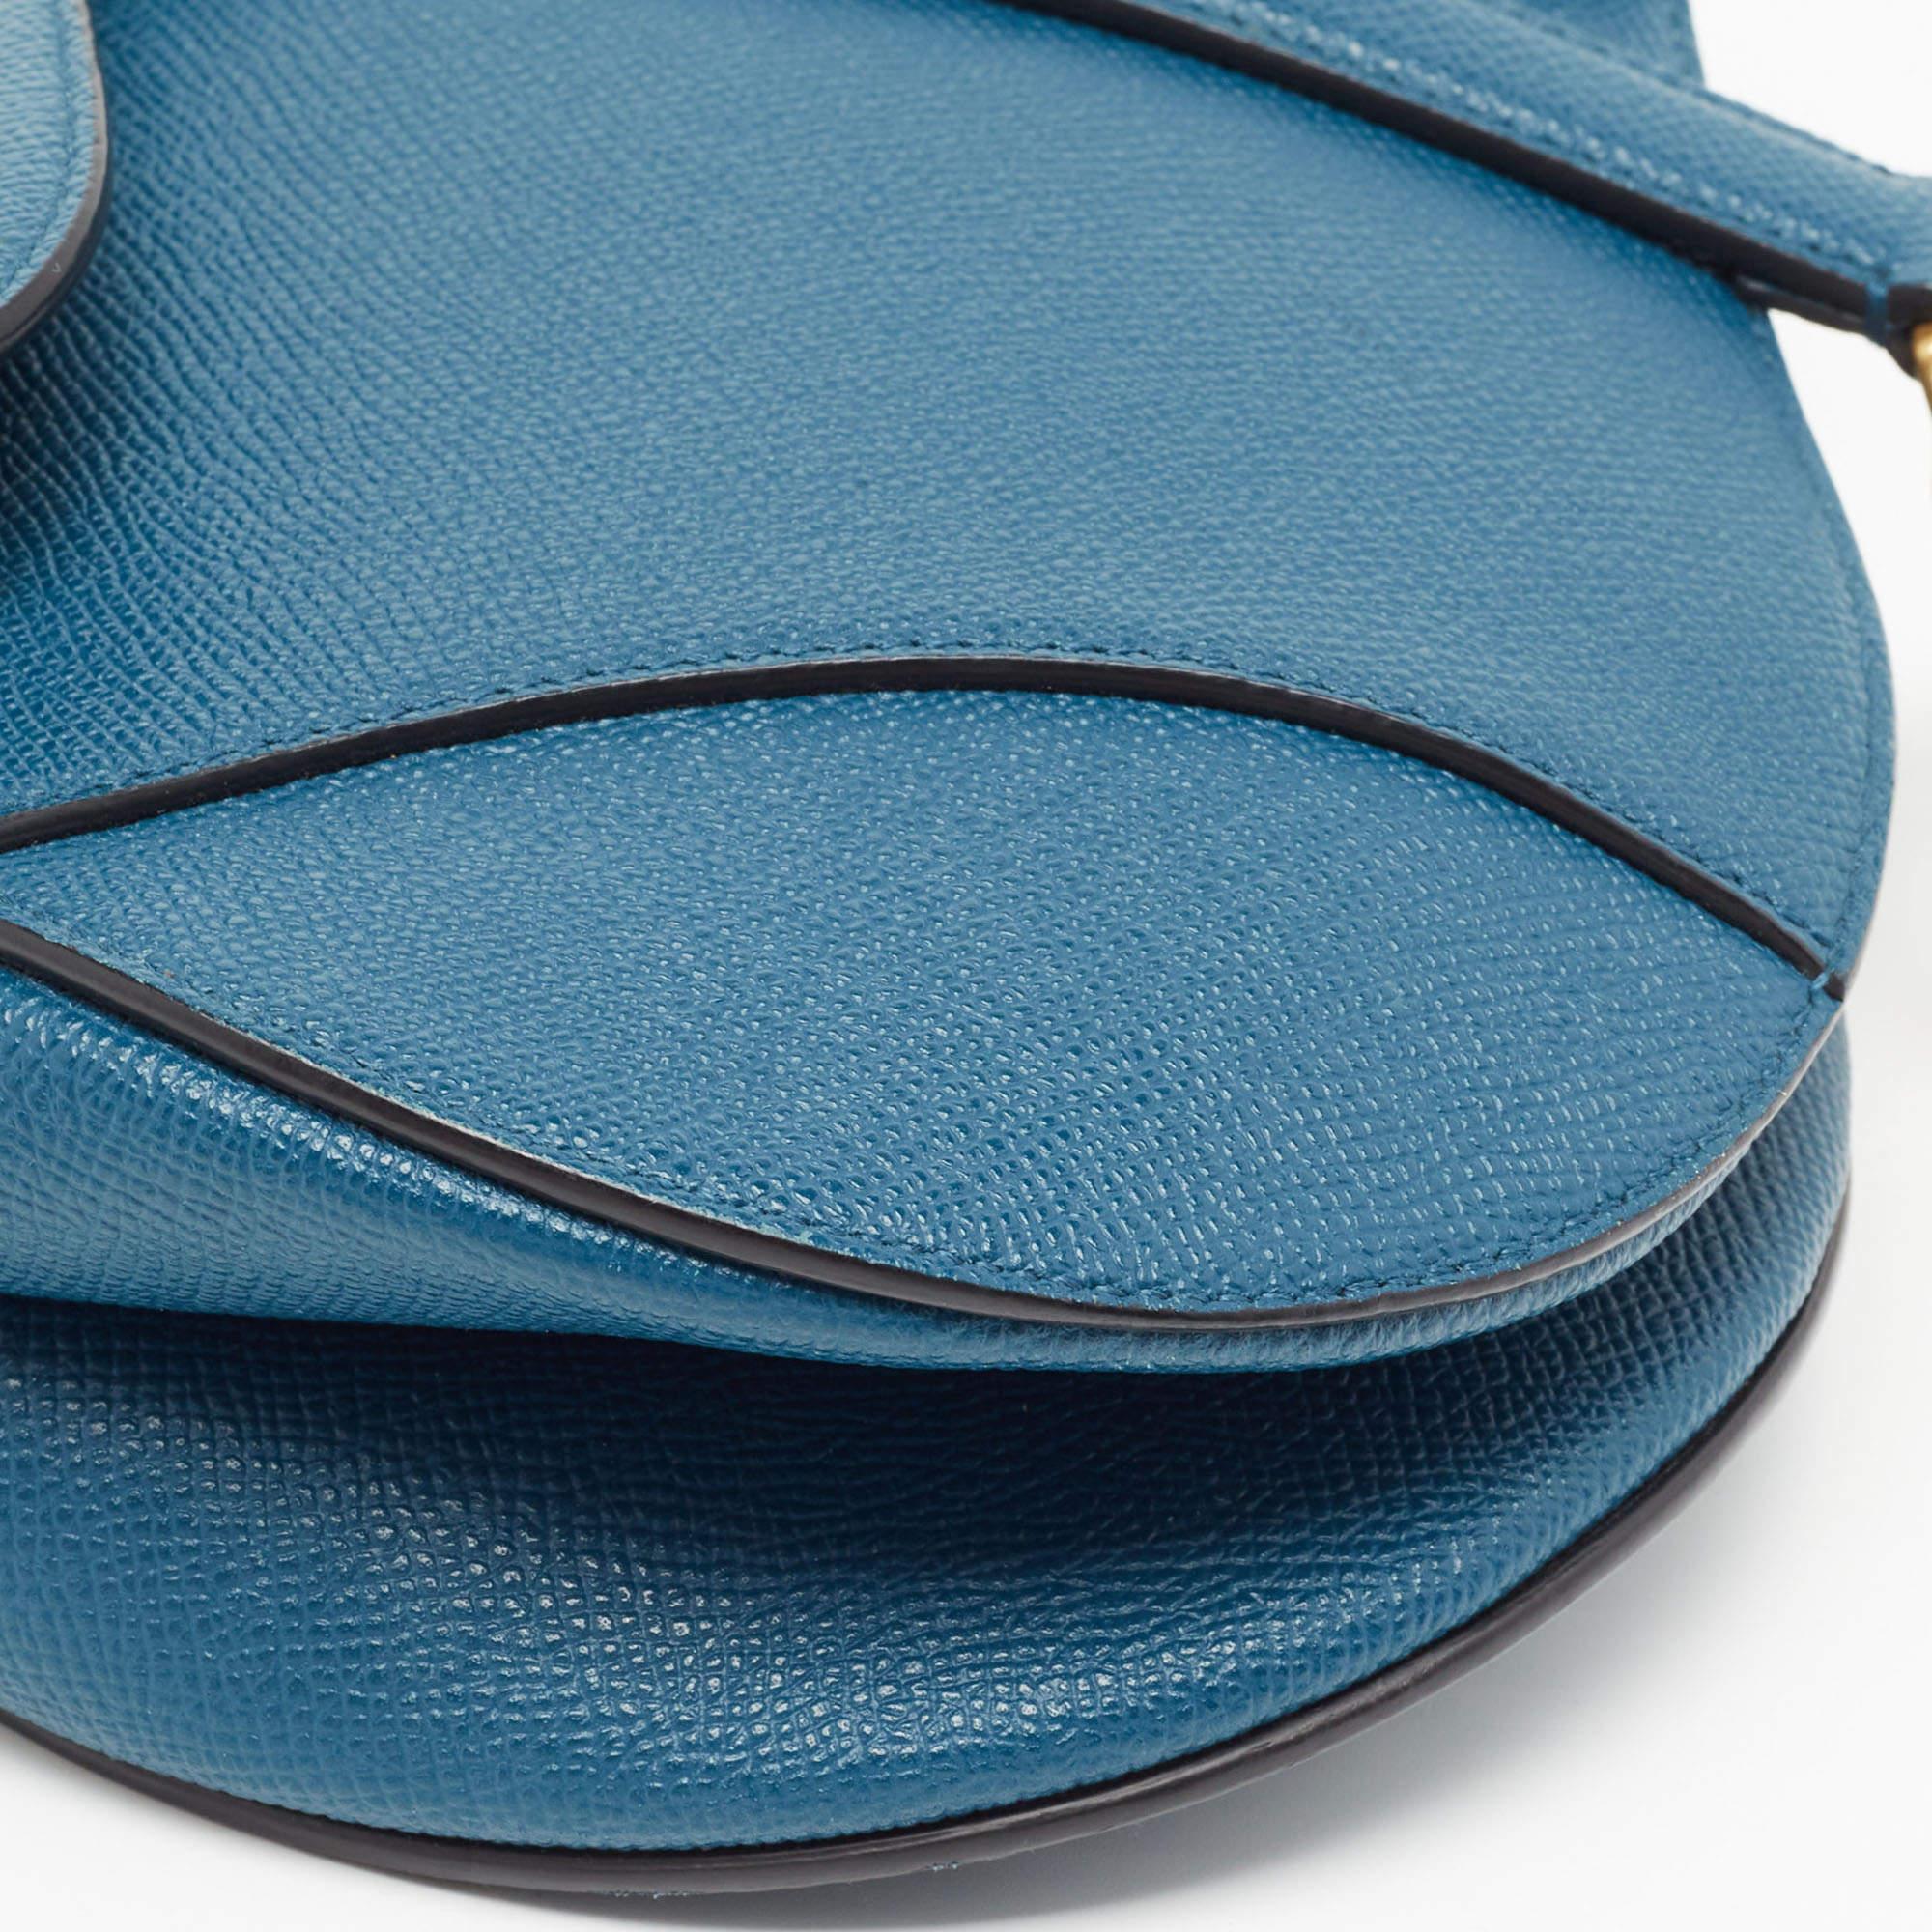 Dior Teal Blue Leather Saddle Shoulder Bag 2